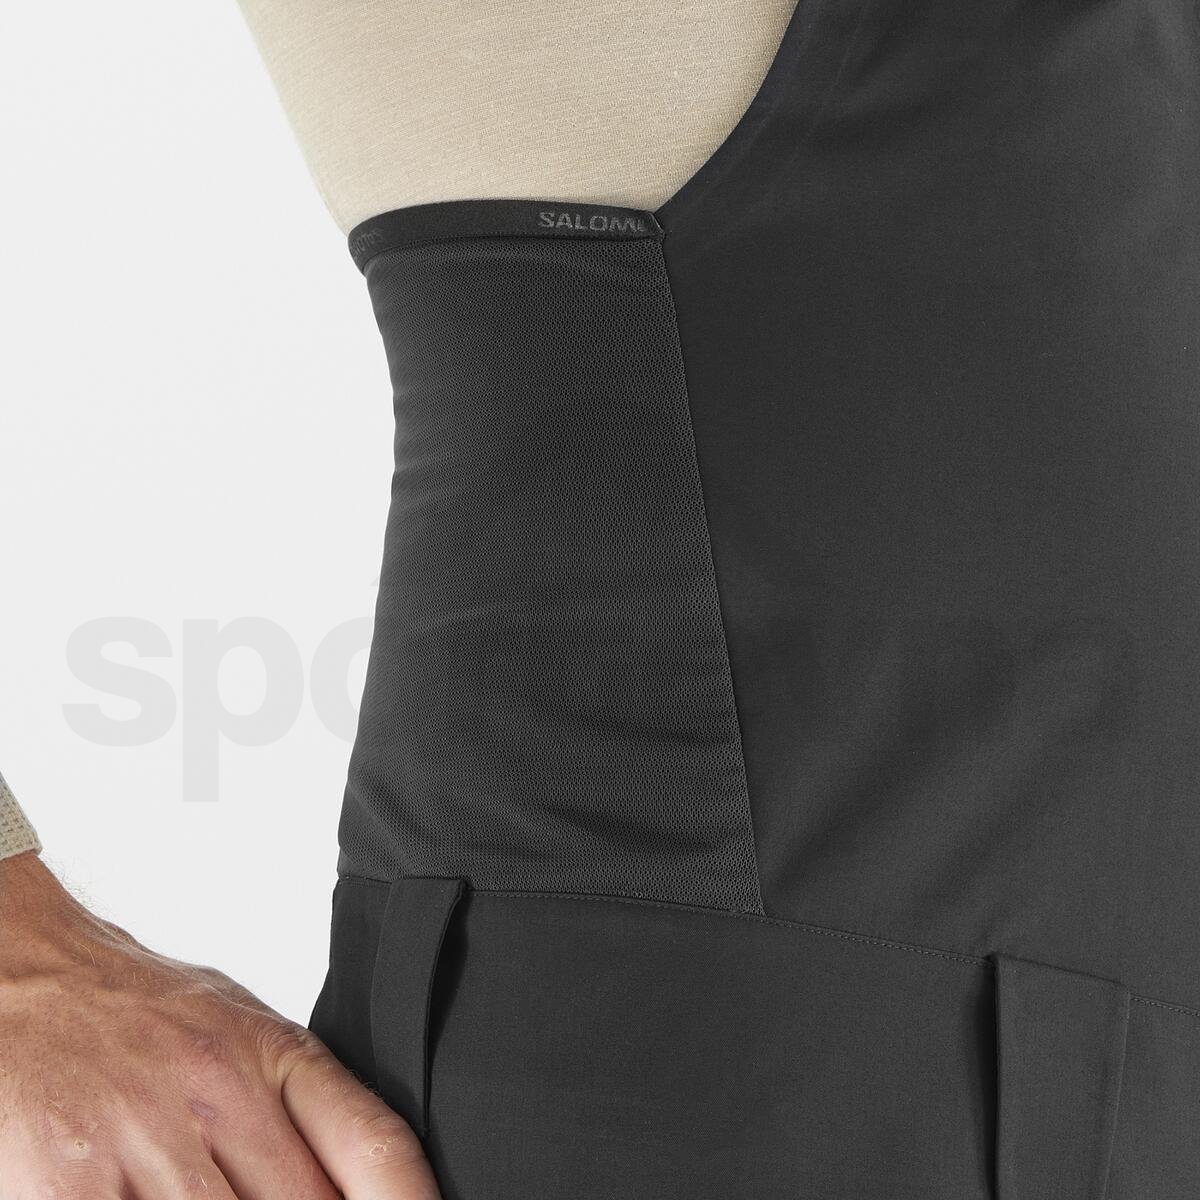 Kalhoty Salomon Stance 3L Bib Pant M - černá